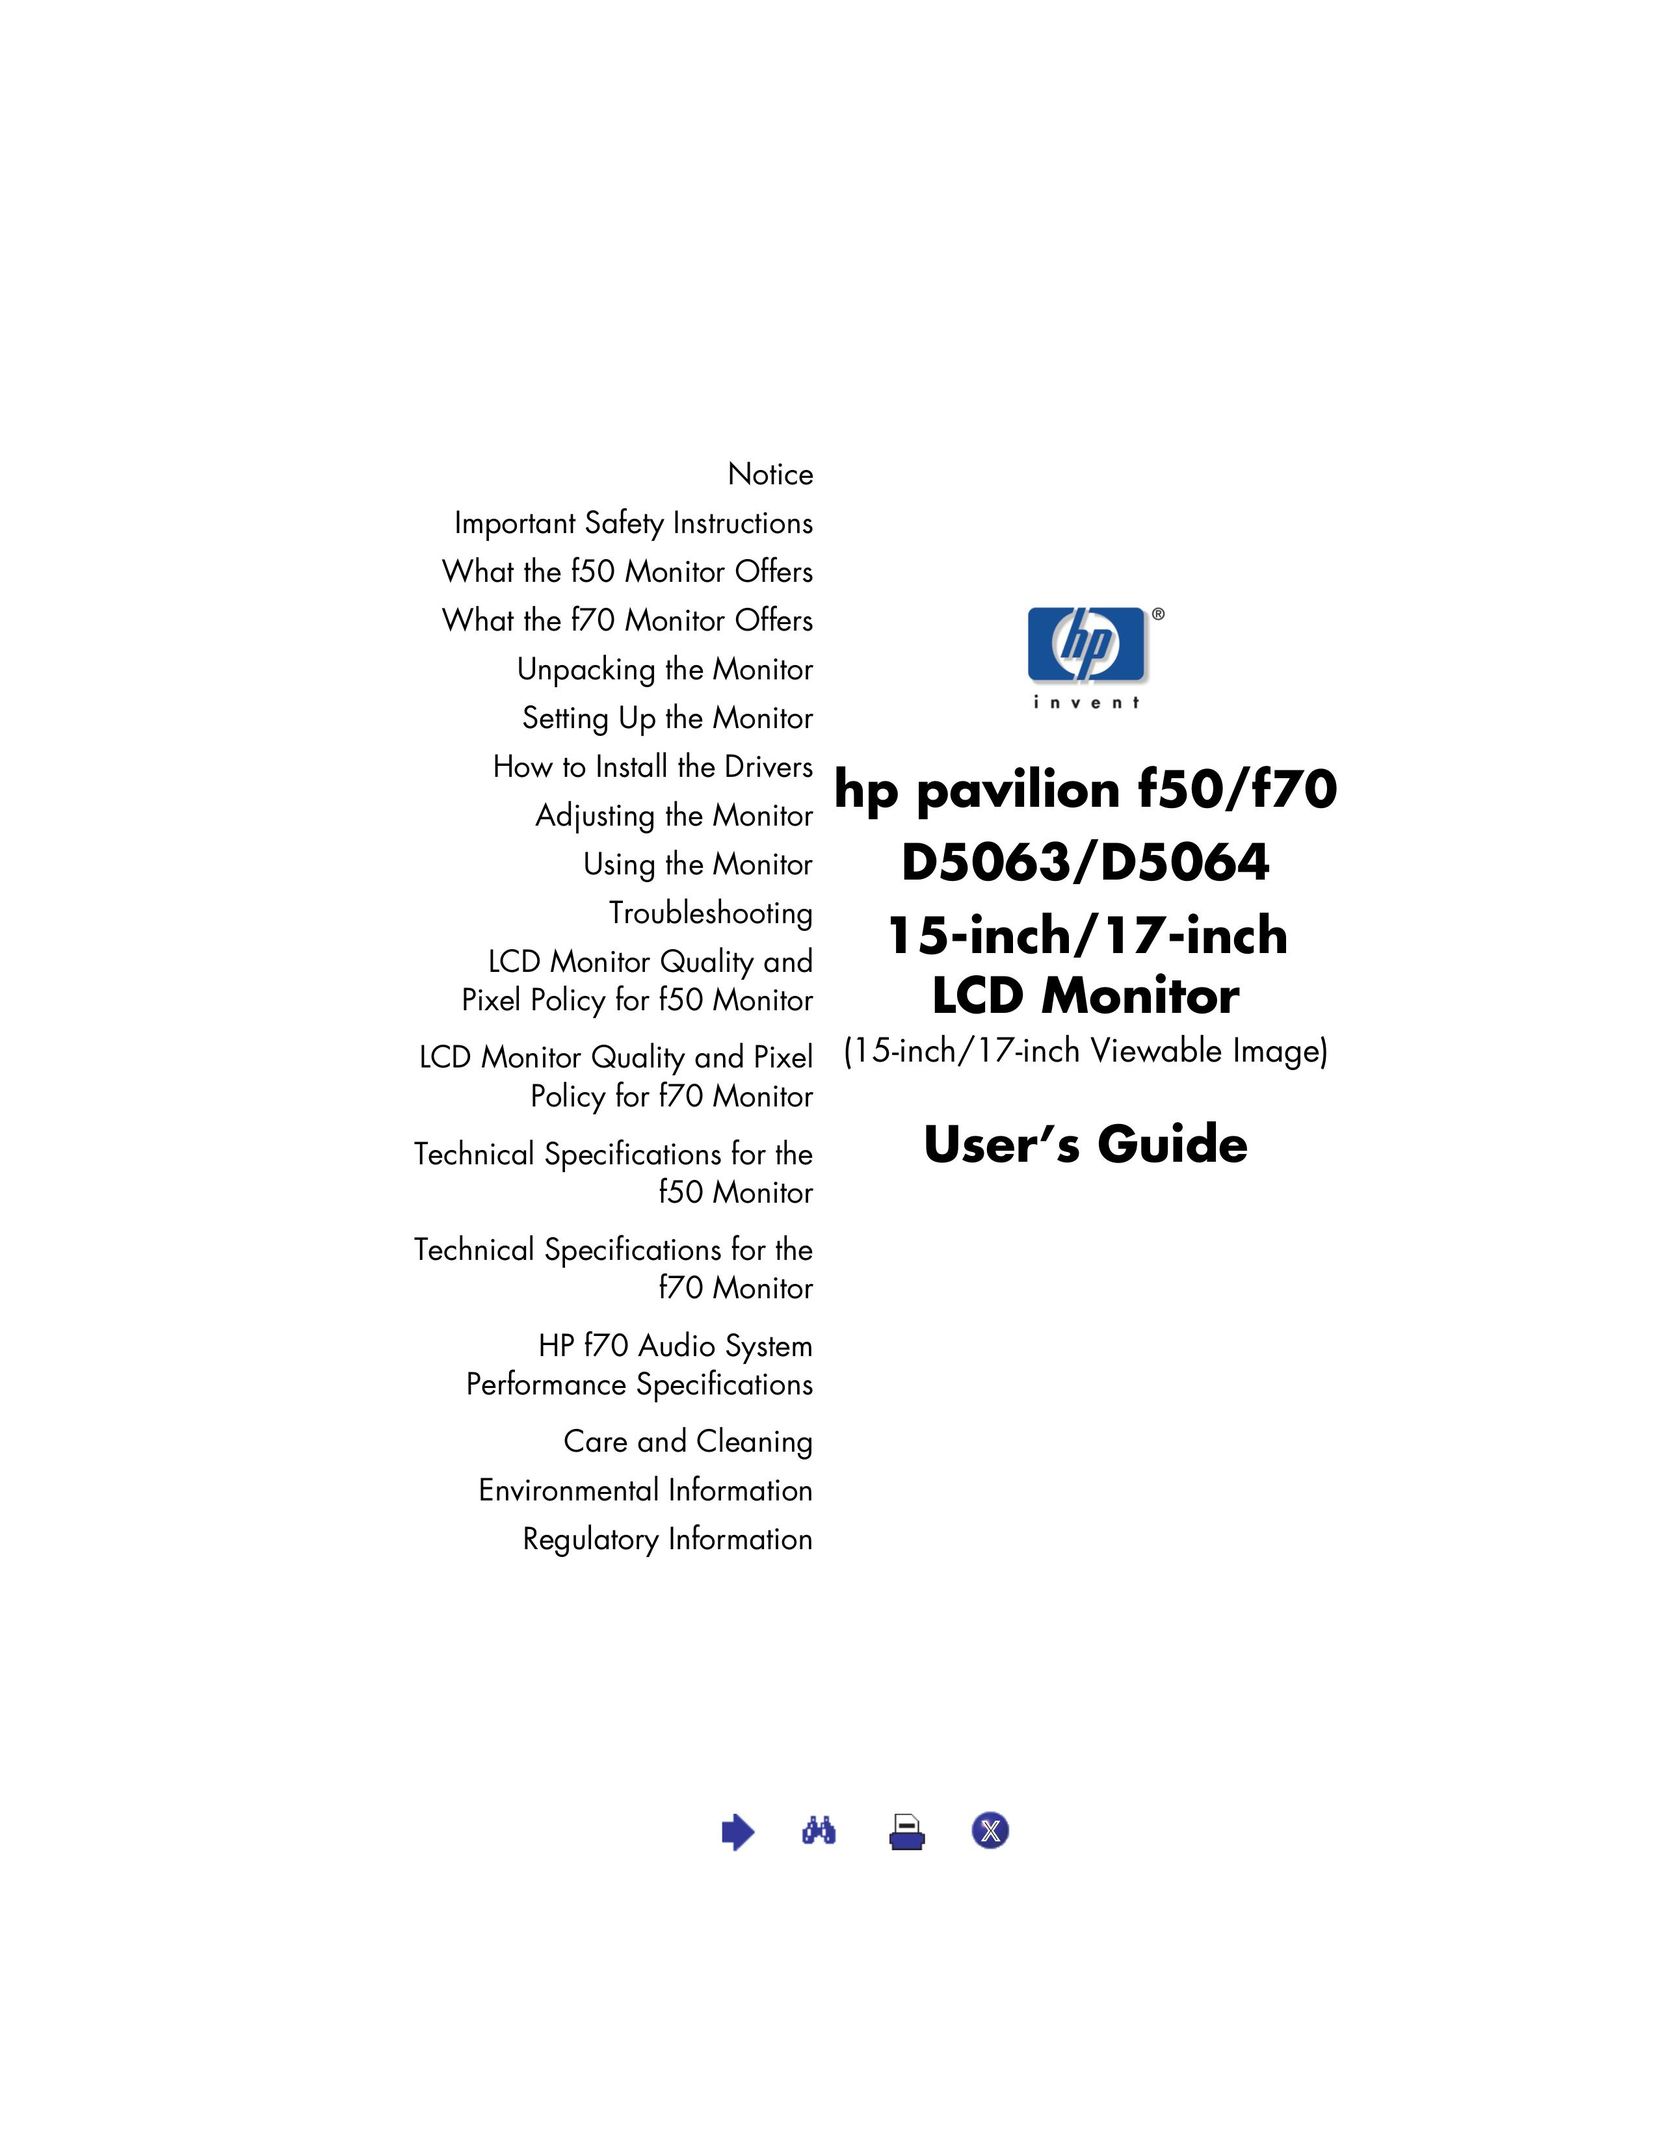 HP (Hewlett-Packard) D5063 Car Video System User Manual